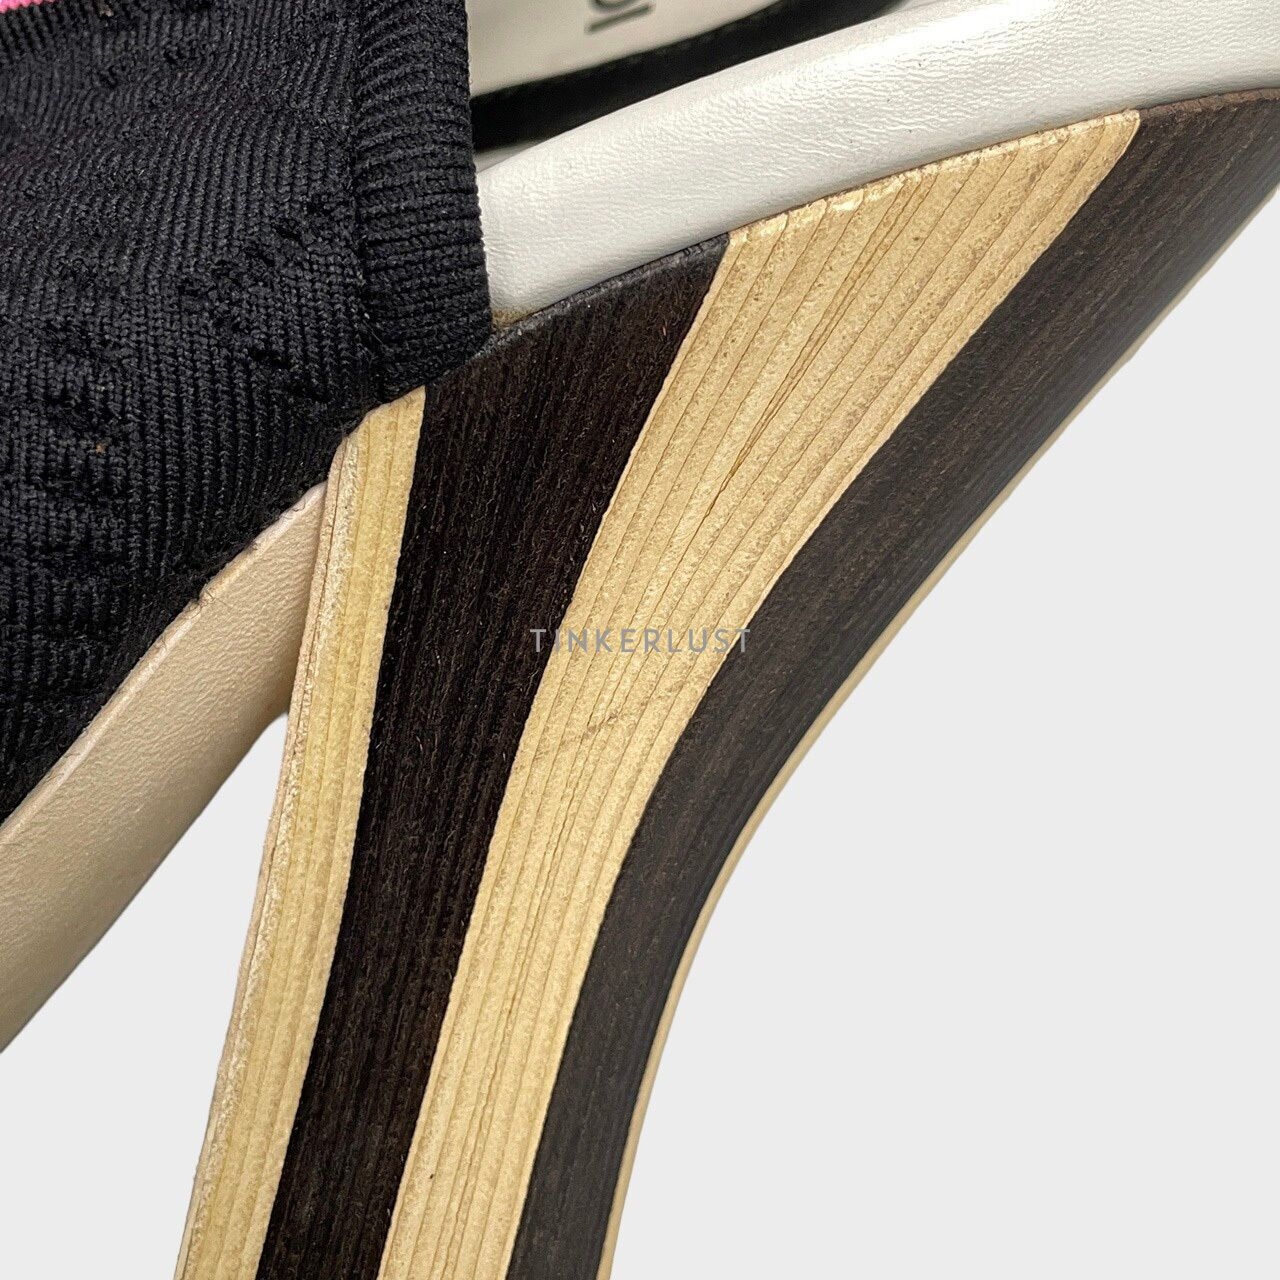 Fendi Knit Rockoko Peep Toe Cut Out Openwork Sock Black Heels